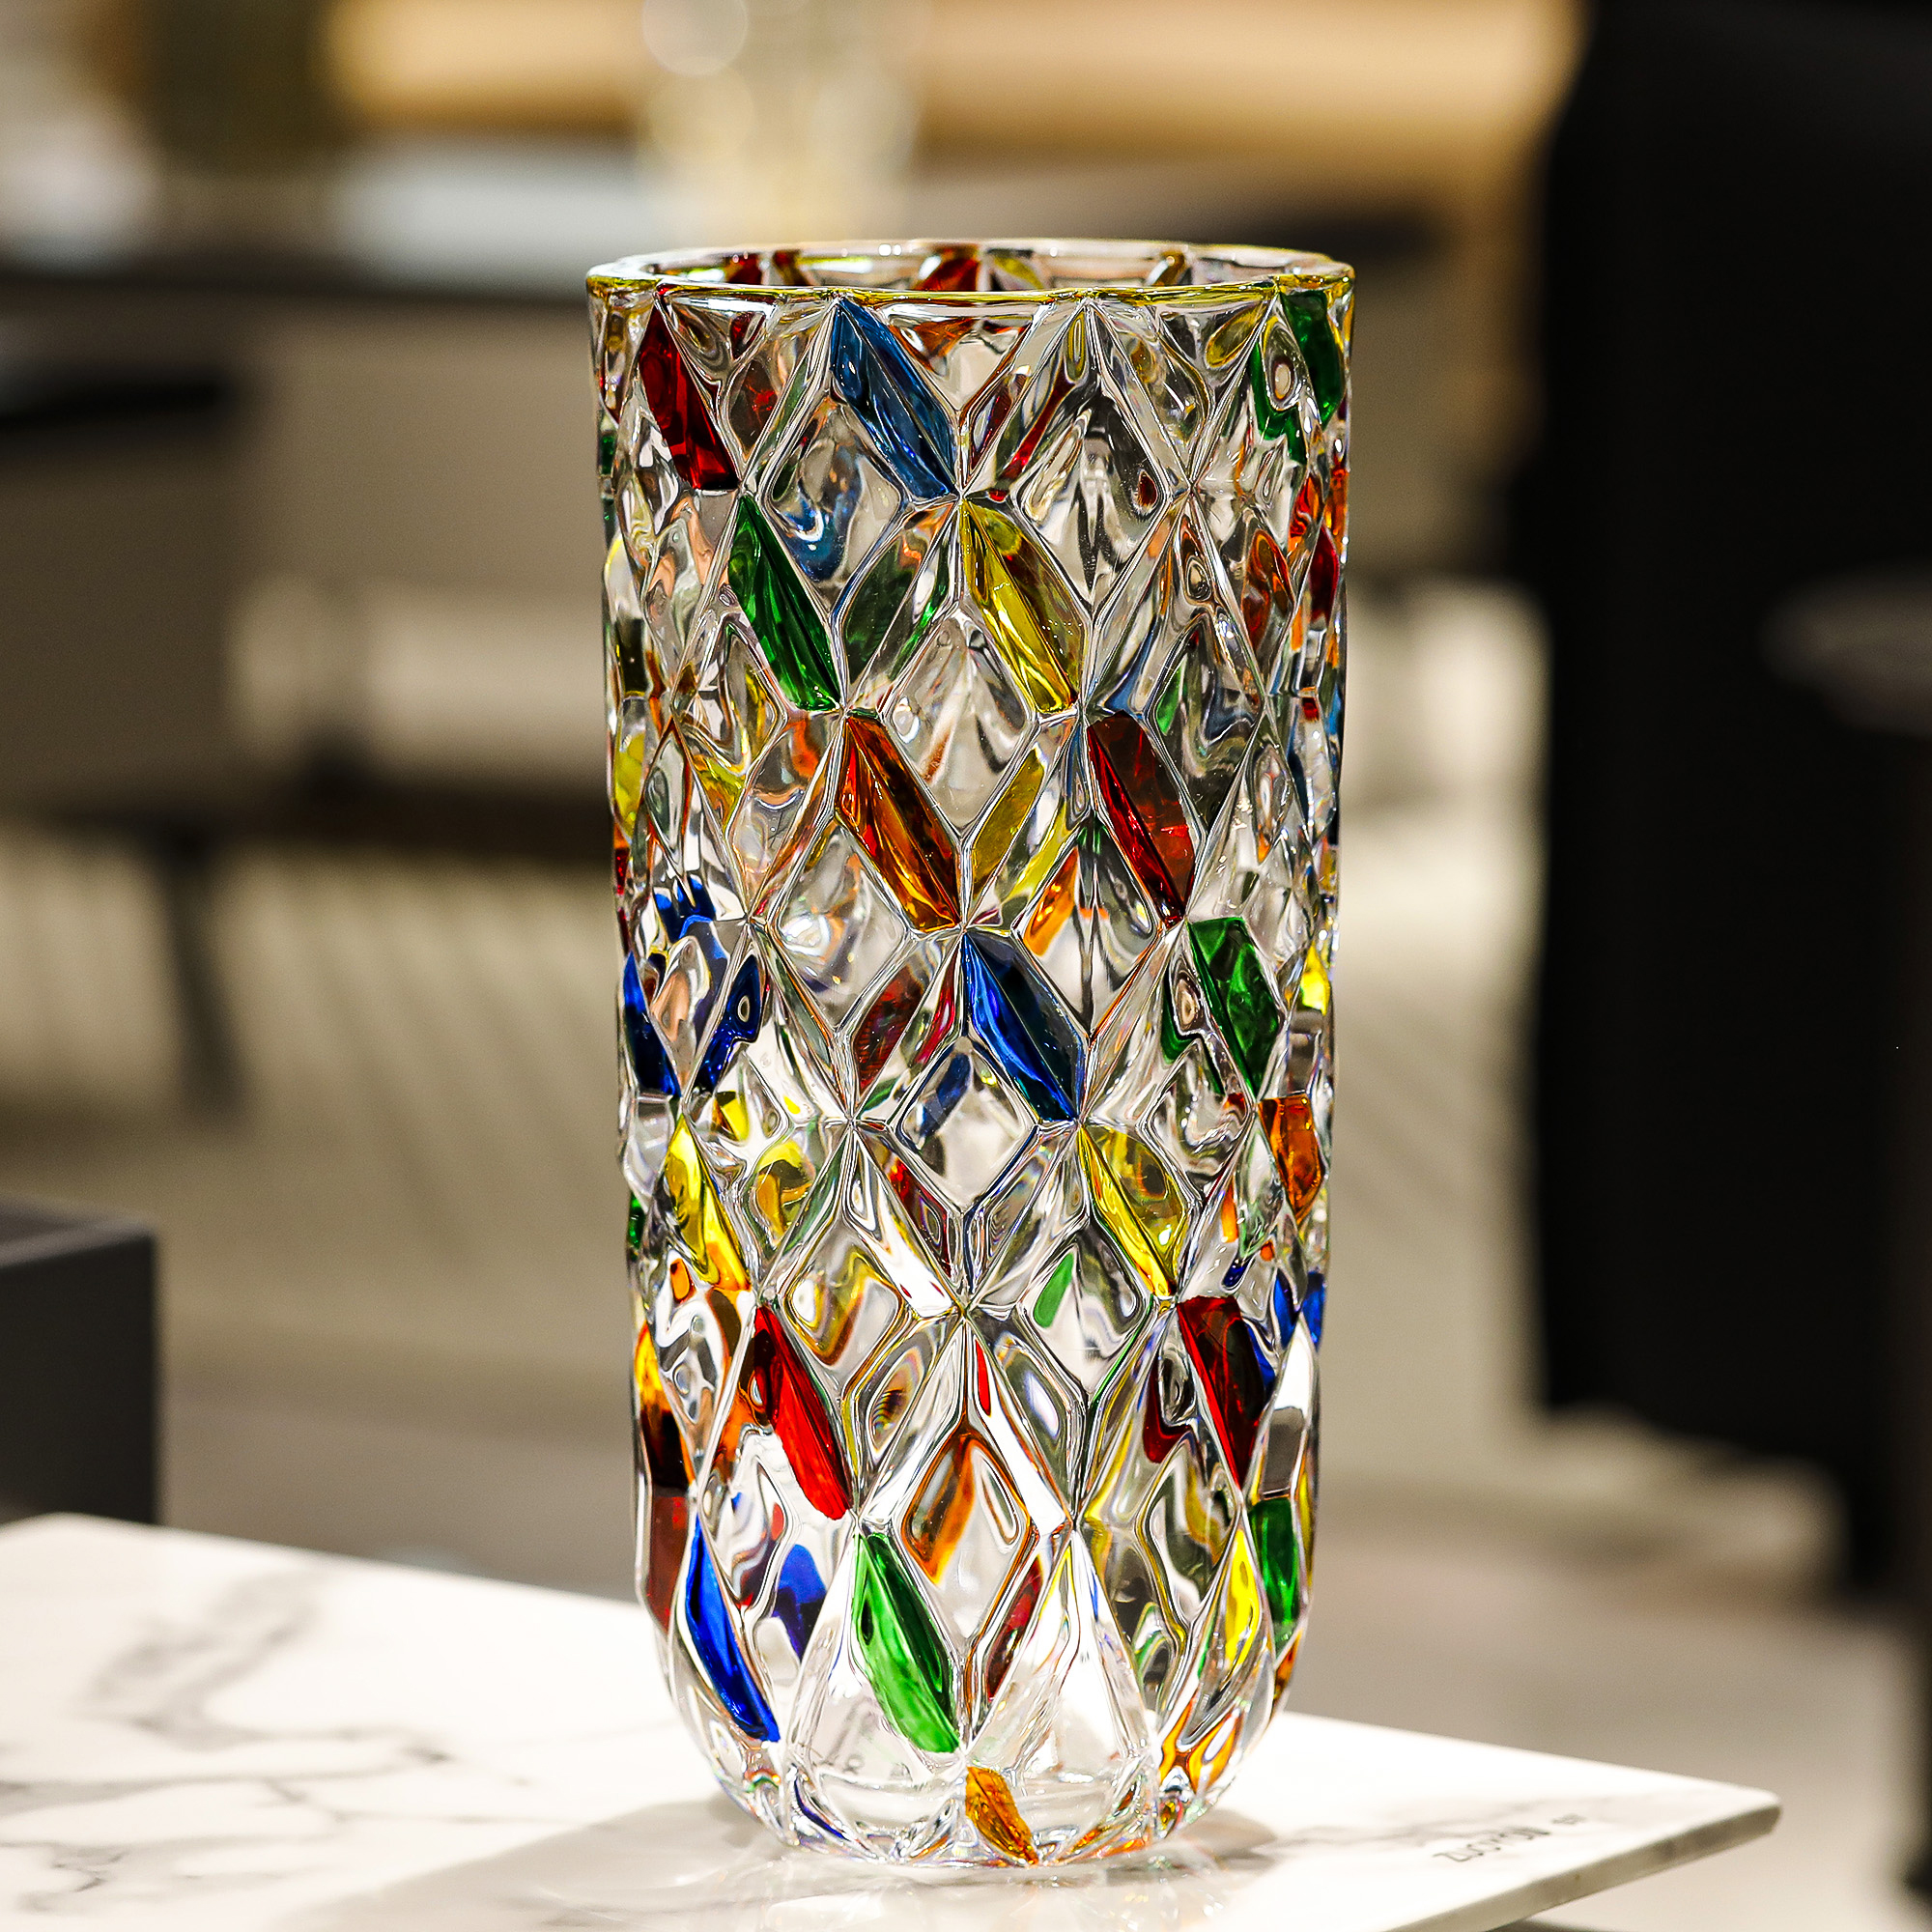 手工彩繪水晶玻璃花瓶北歐風格中等尺寸適用於客廳臥室等場景高檔奢華的裝飾擺件 (6.4折)